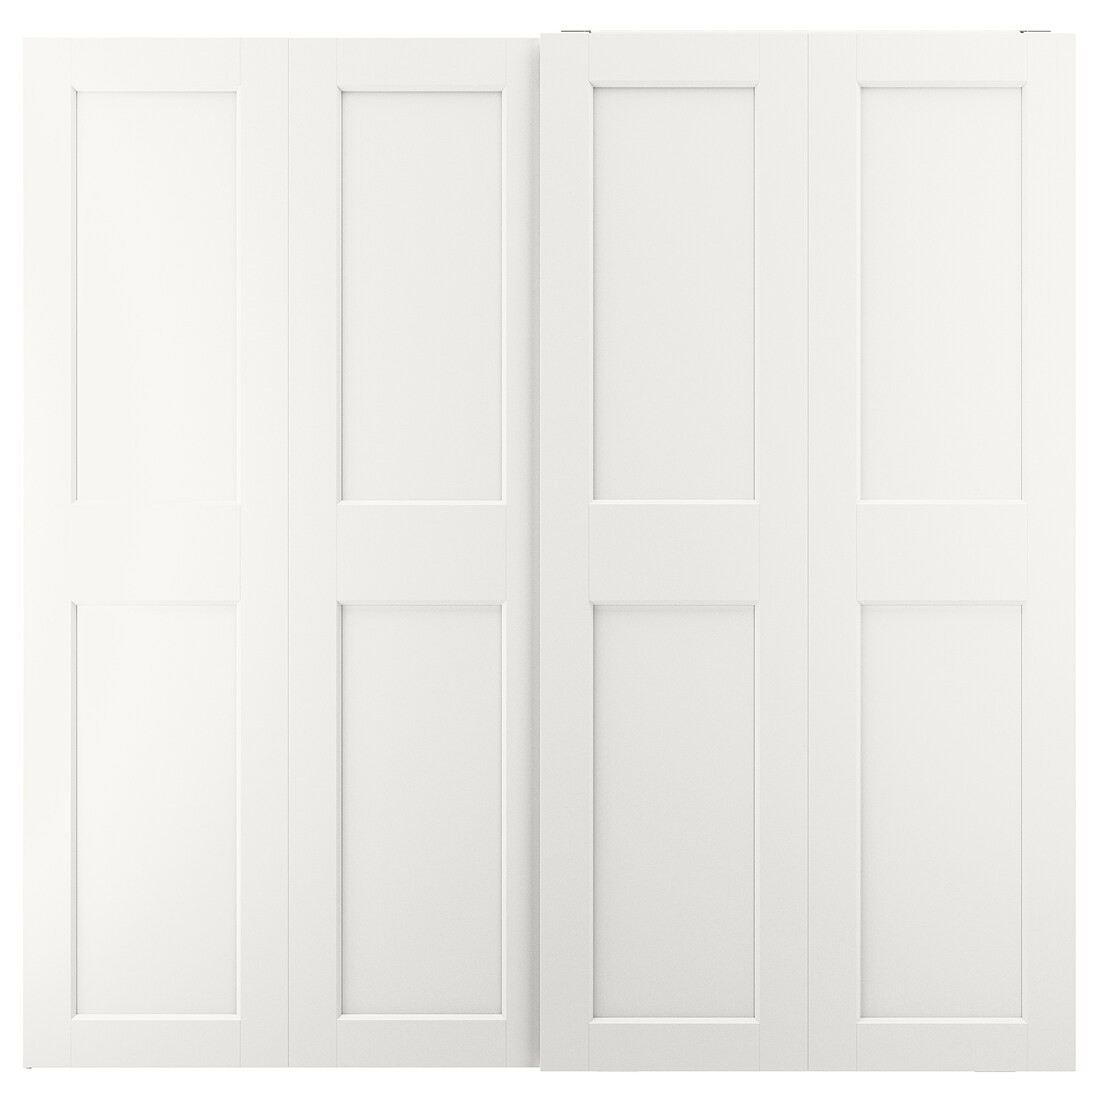 GRIMO ГРИМО Пара раздвижных дверей, белый, 200x201 см